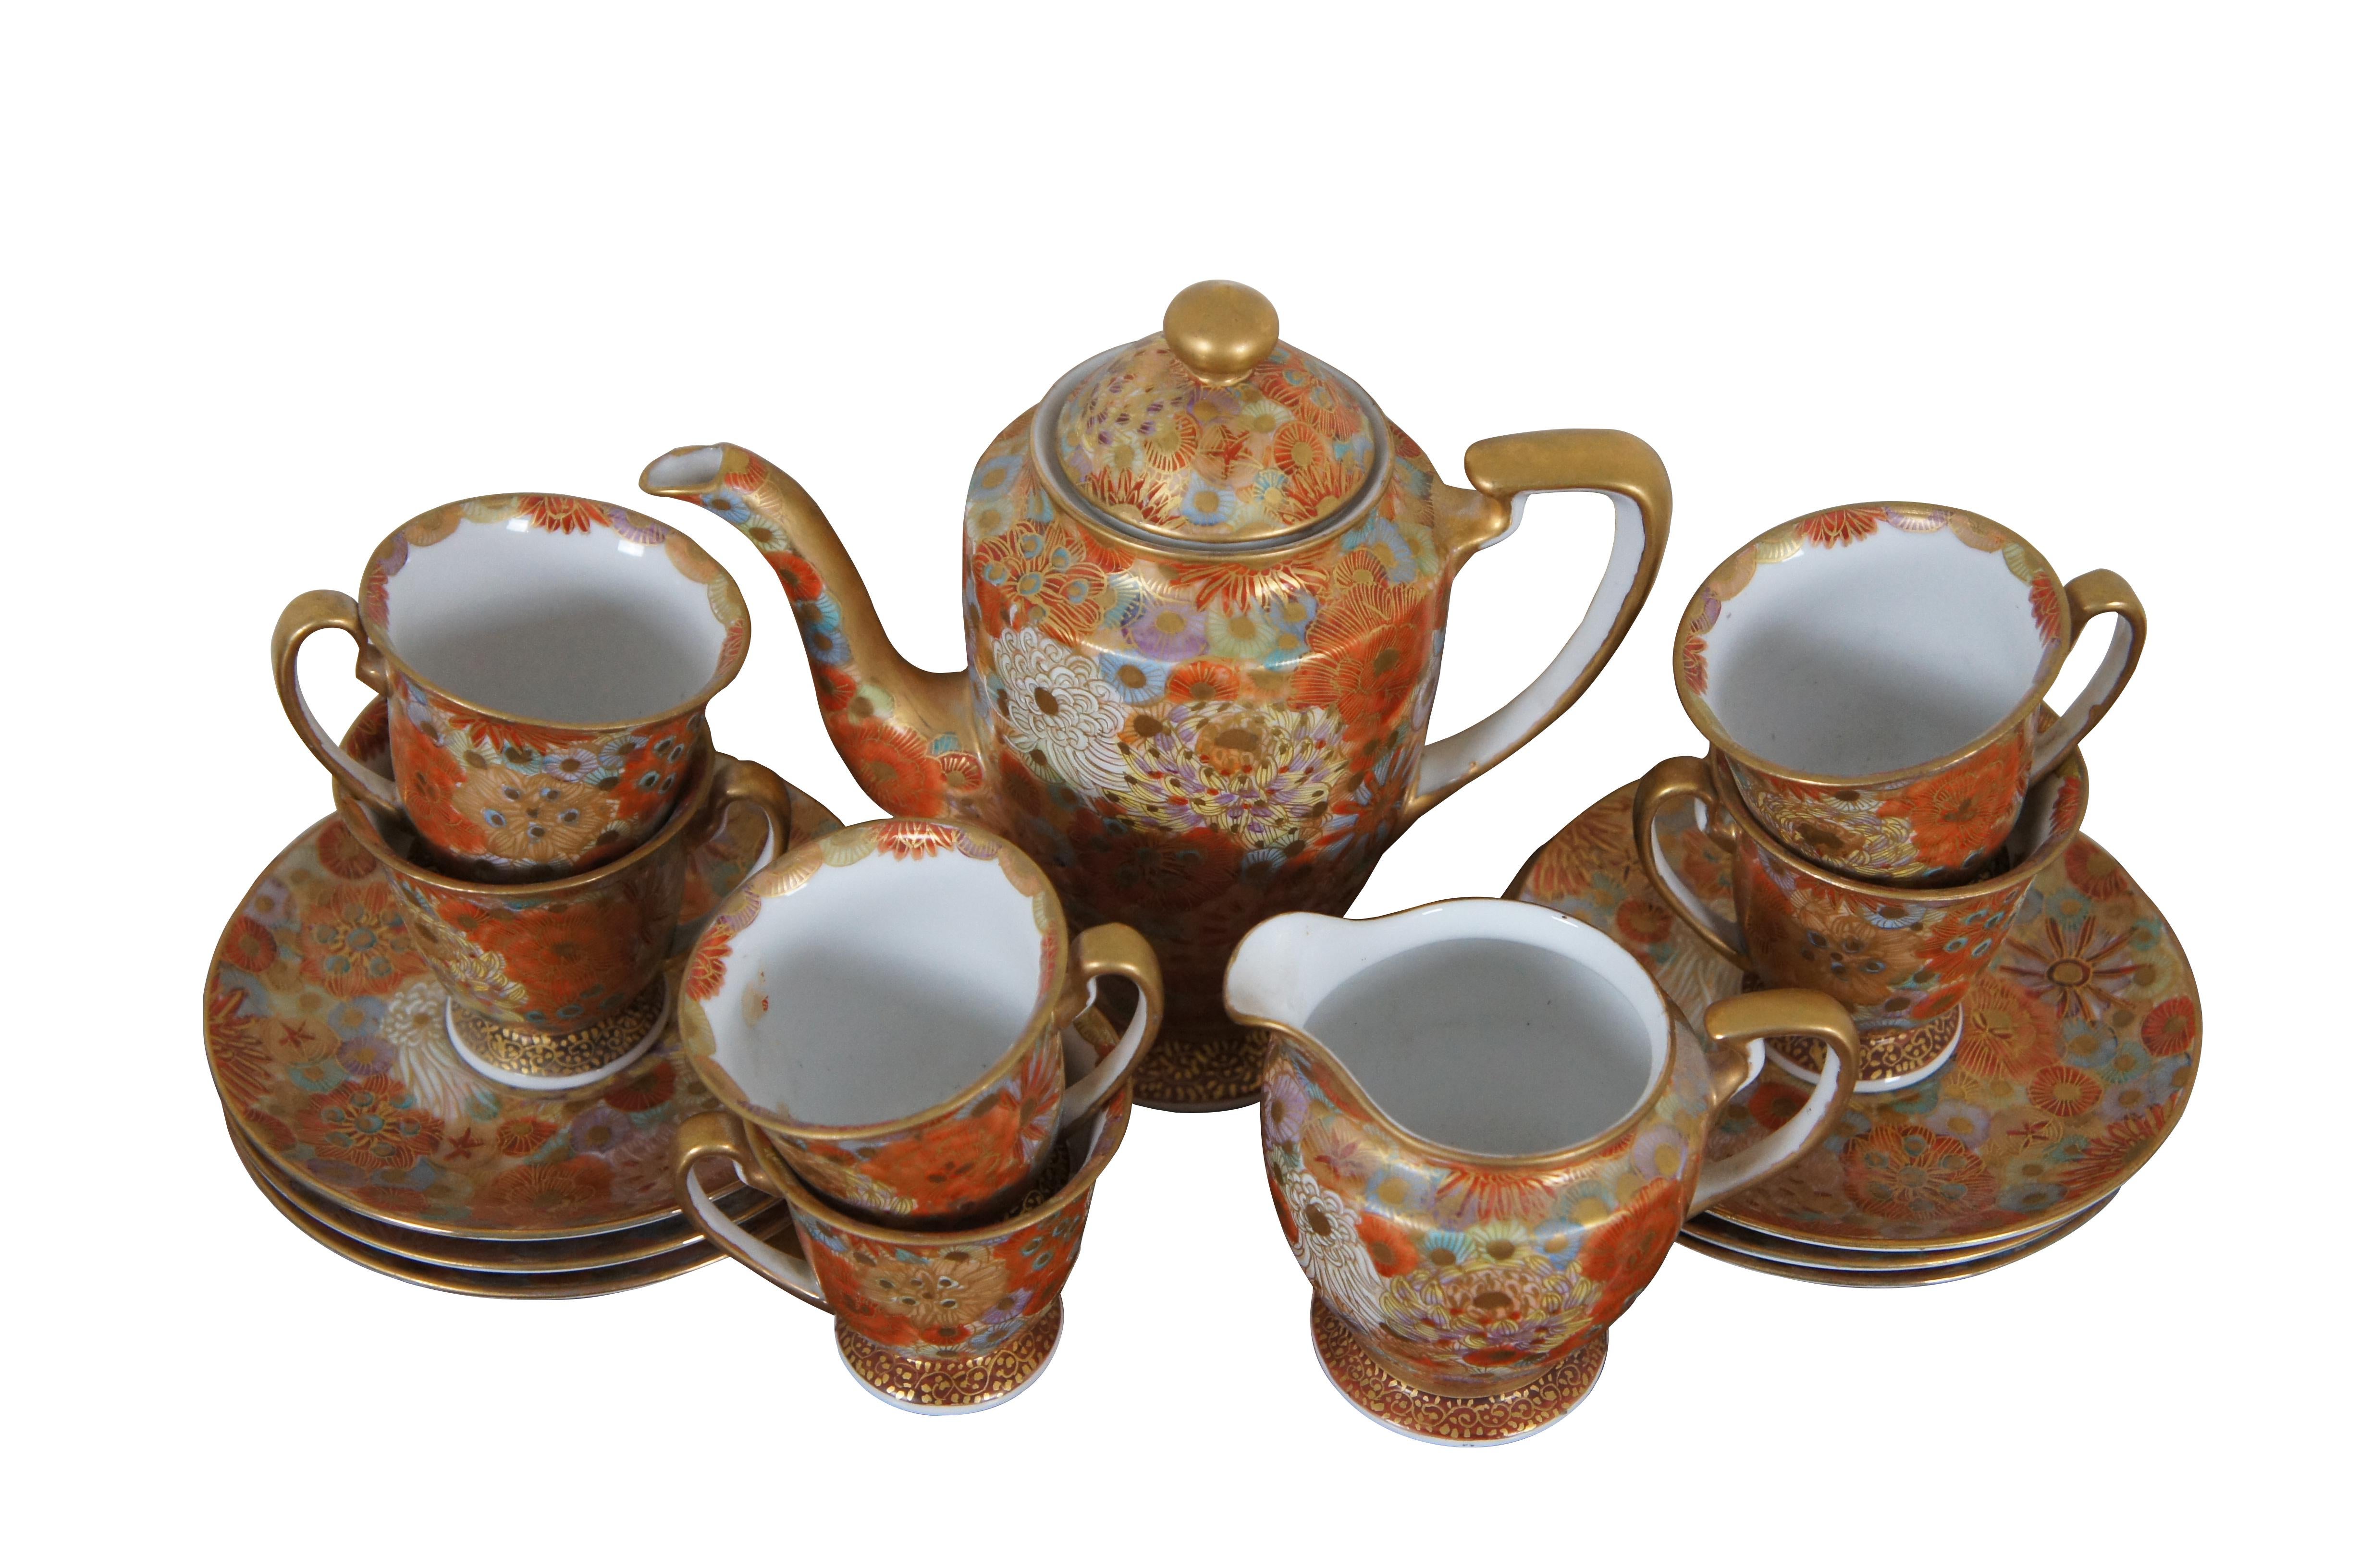 Vintage Japanese Satsuma Porcelain Demitasse Tee oder Kaffee Set mit dem Tausend-Blumen-Design mit goldenen Akzenten.  Enthält Teekanne mit Deckel, Milchkännchen, sechs Tassen und sechs Untertassen.  Hergestellt in Japan.

Abmessungen:
Teekanne -